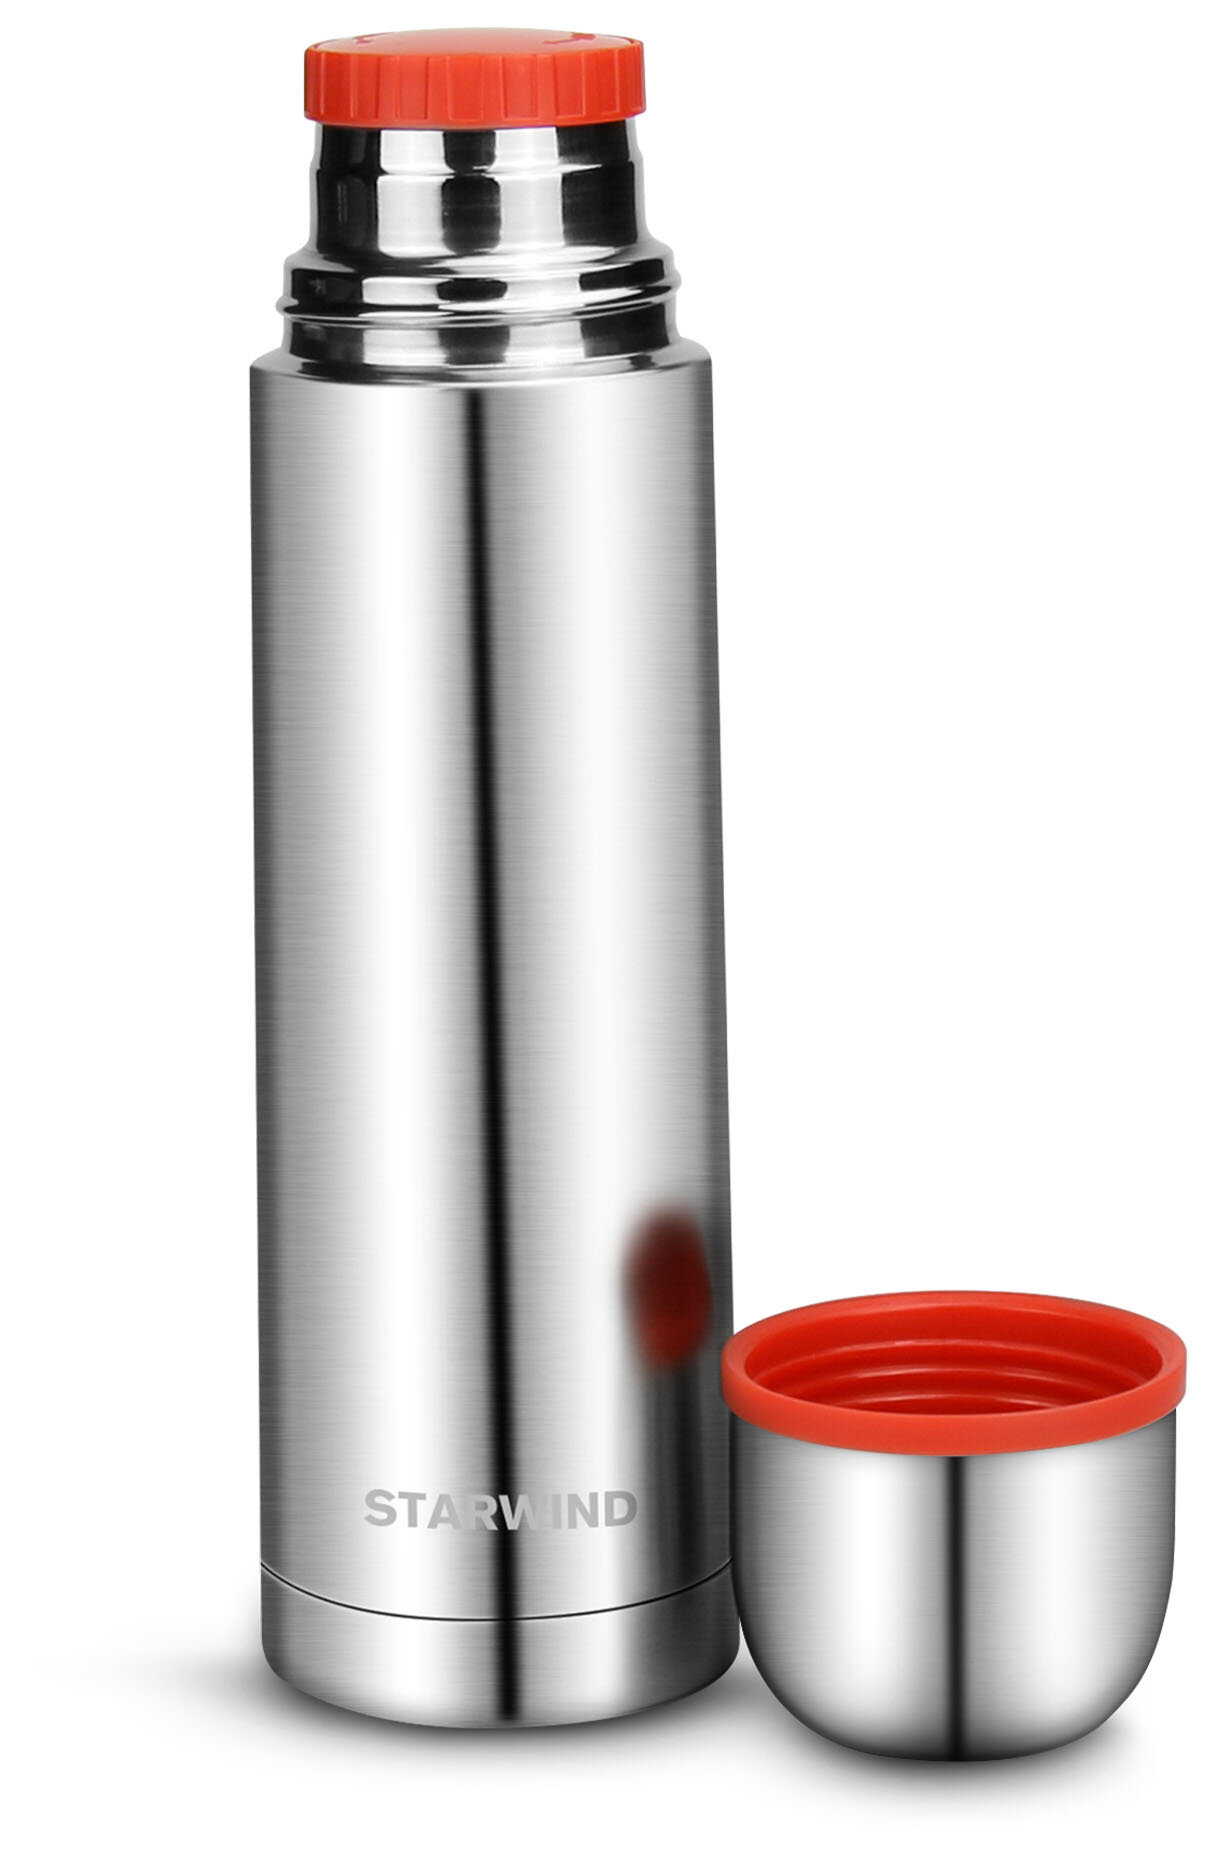 Термос для напитков Starwind 10-500 0.5л. серебристый/красный картонная коробка - фотография № 2